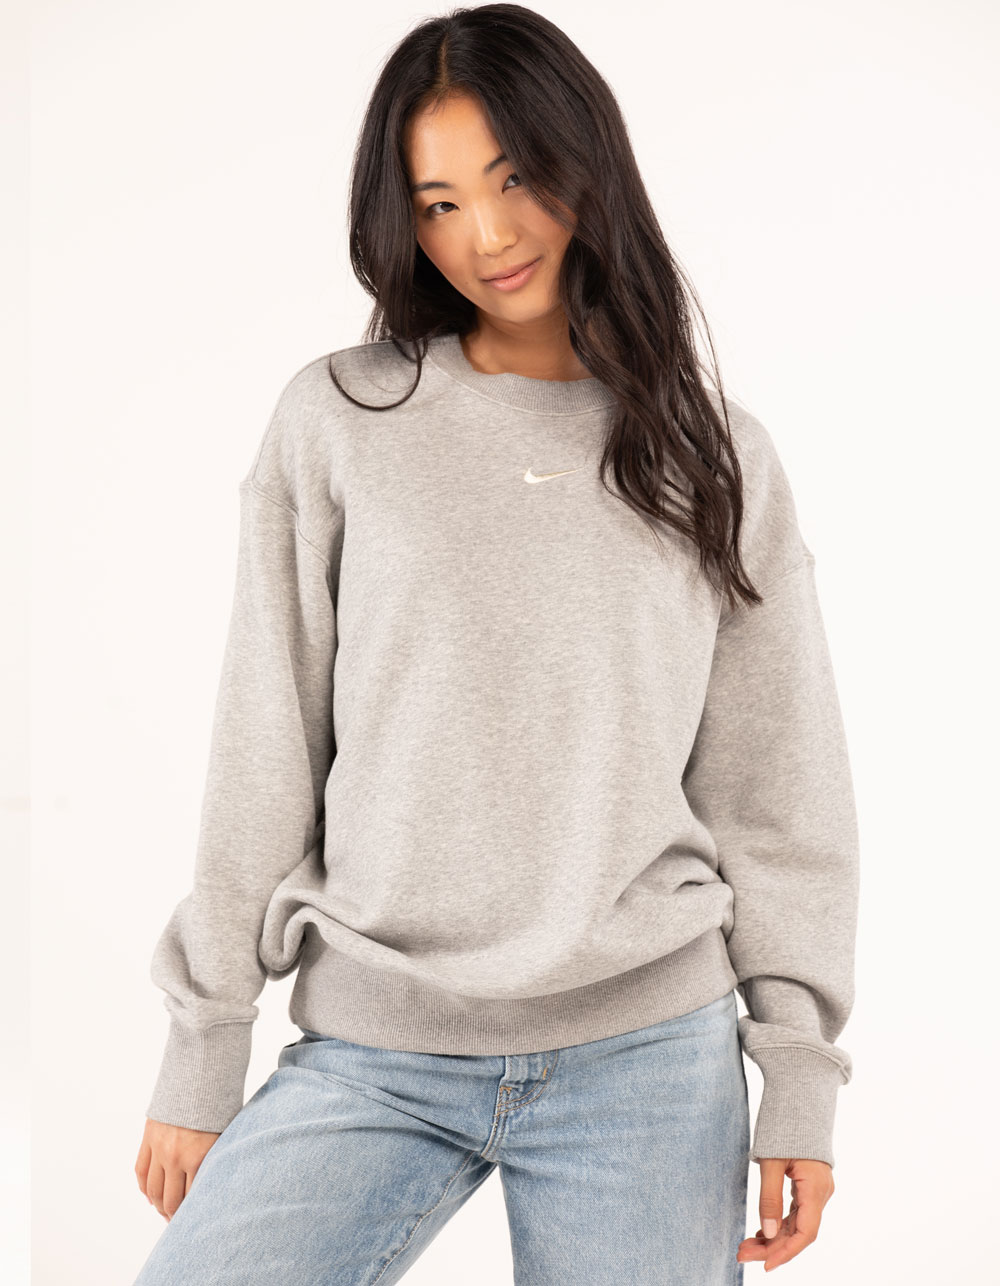 NIKE Sportswear Phoenix Fleece Womens Oversized Sweatshirt - HEATHER GRAY